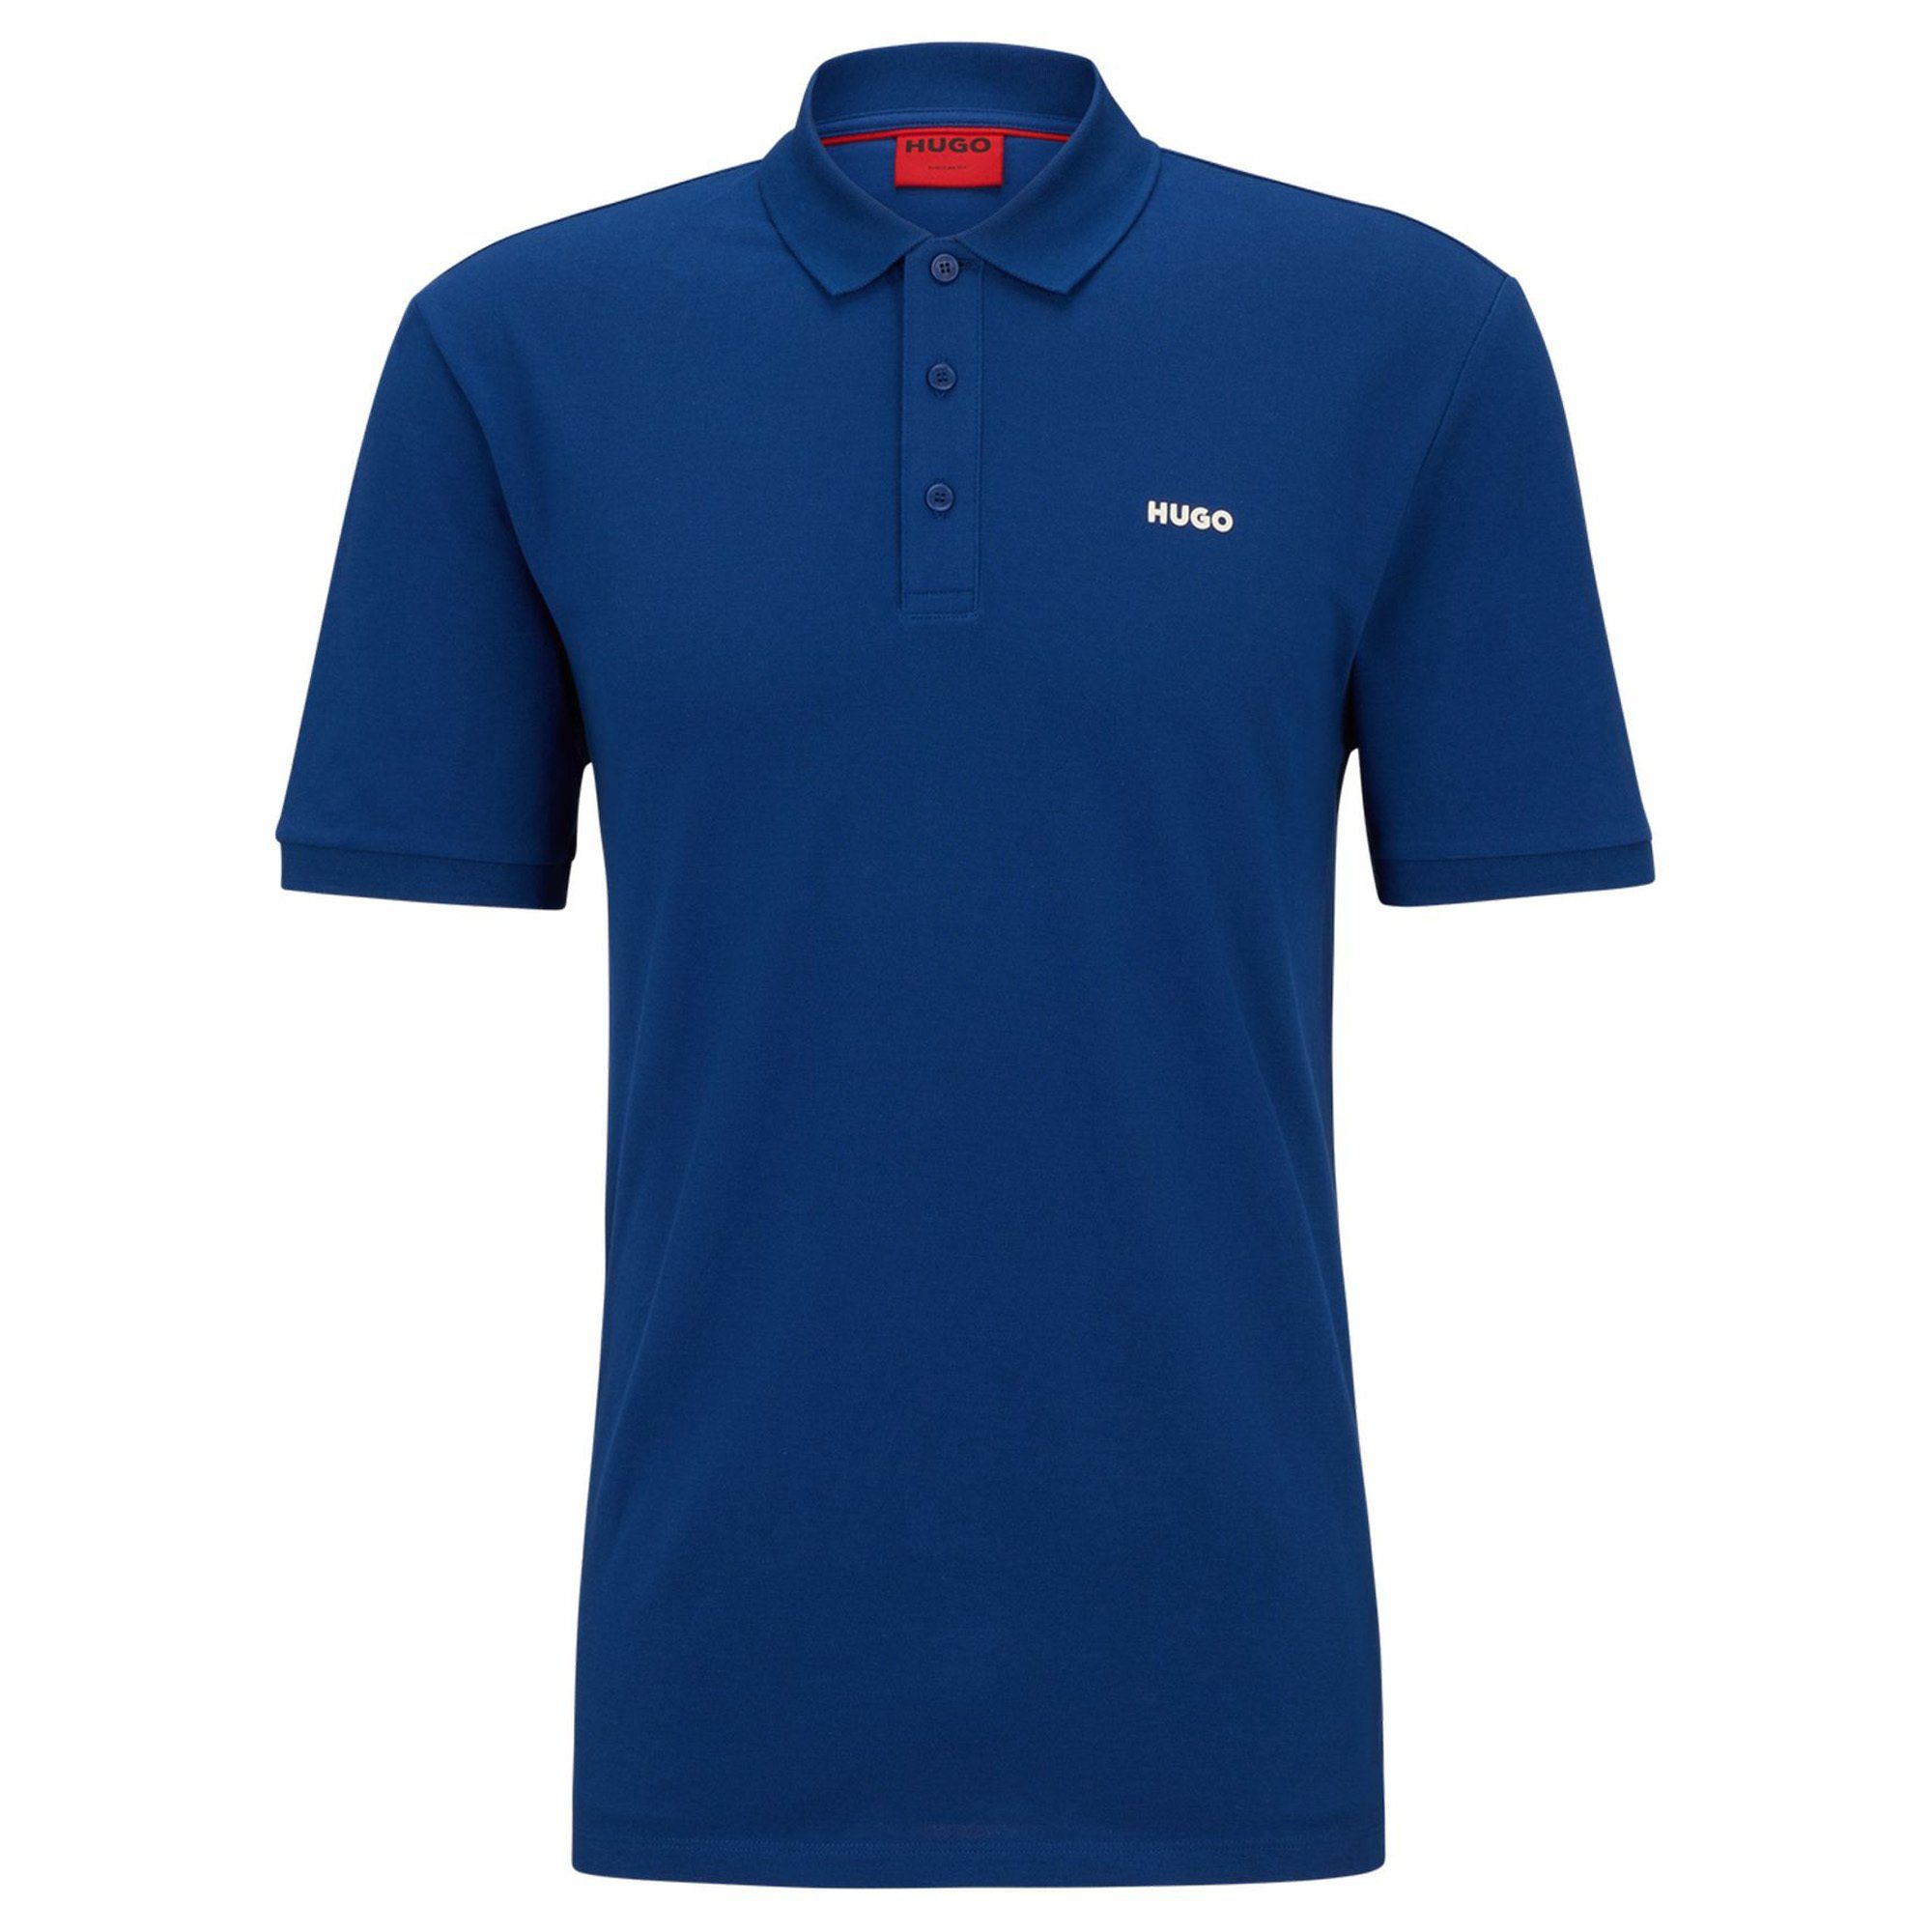 HUGO Poloshirt Herren Polo-Shirt - DONOS222, Pique, 1/2-Arm Blau (Navy)